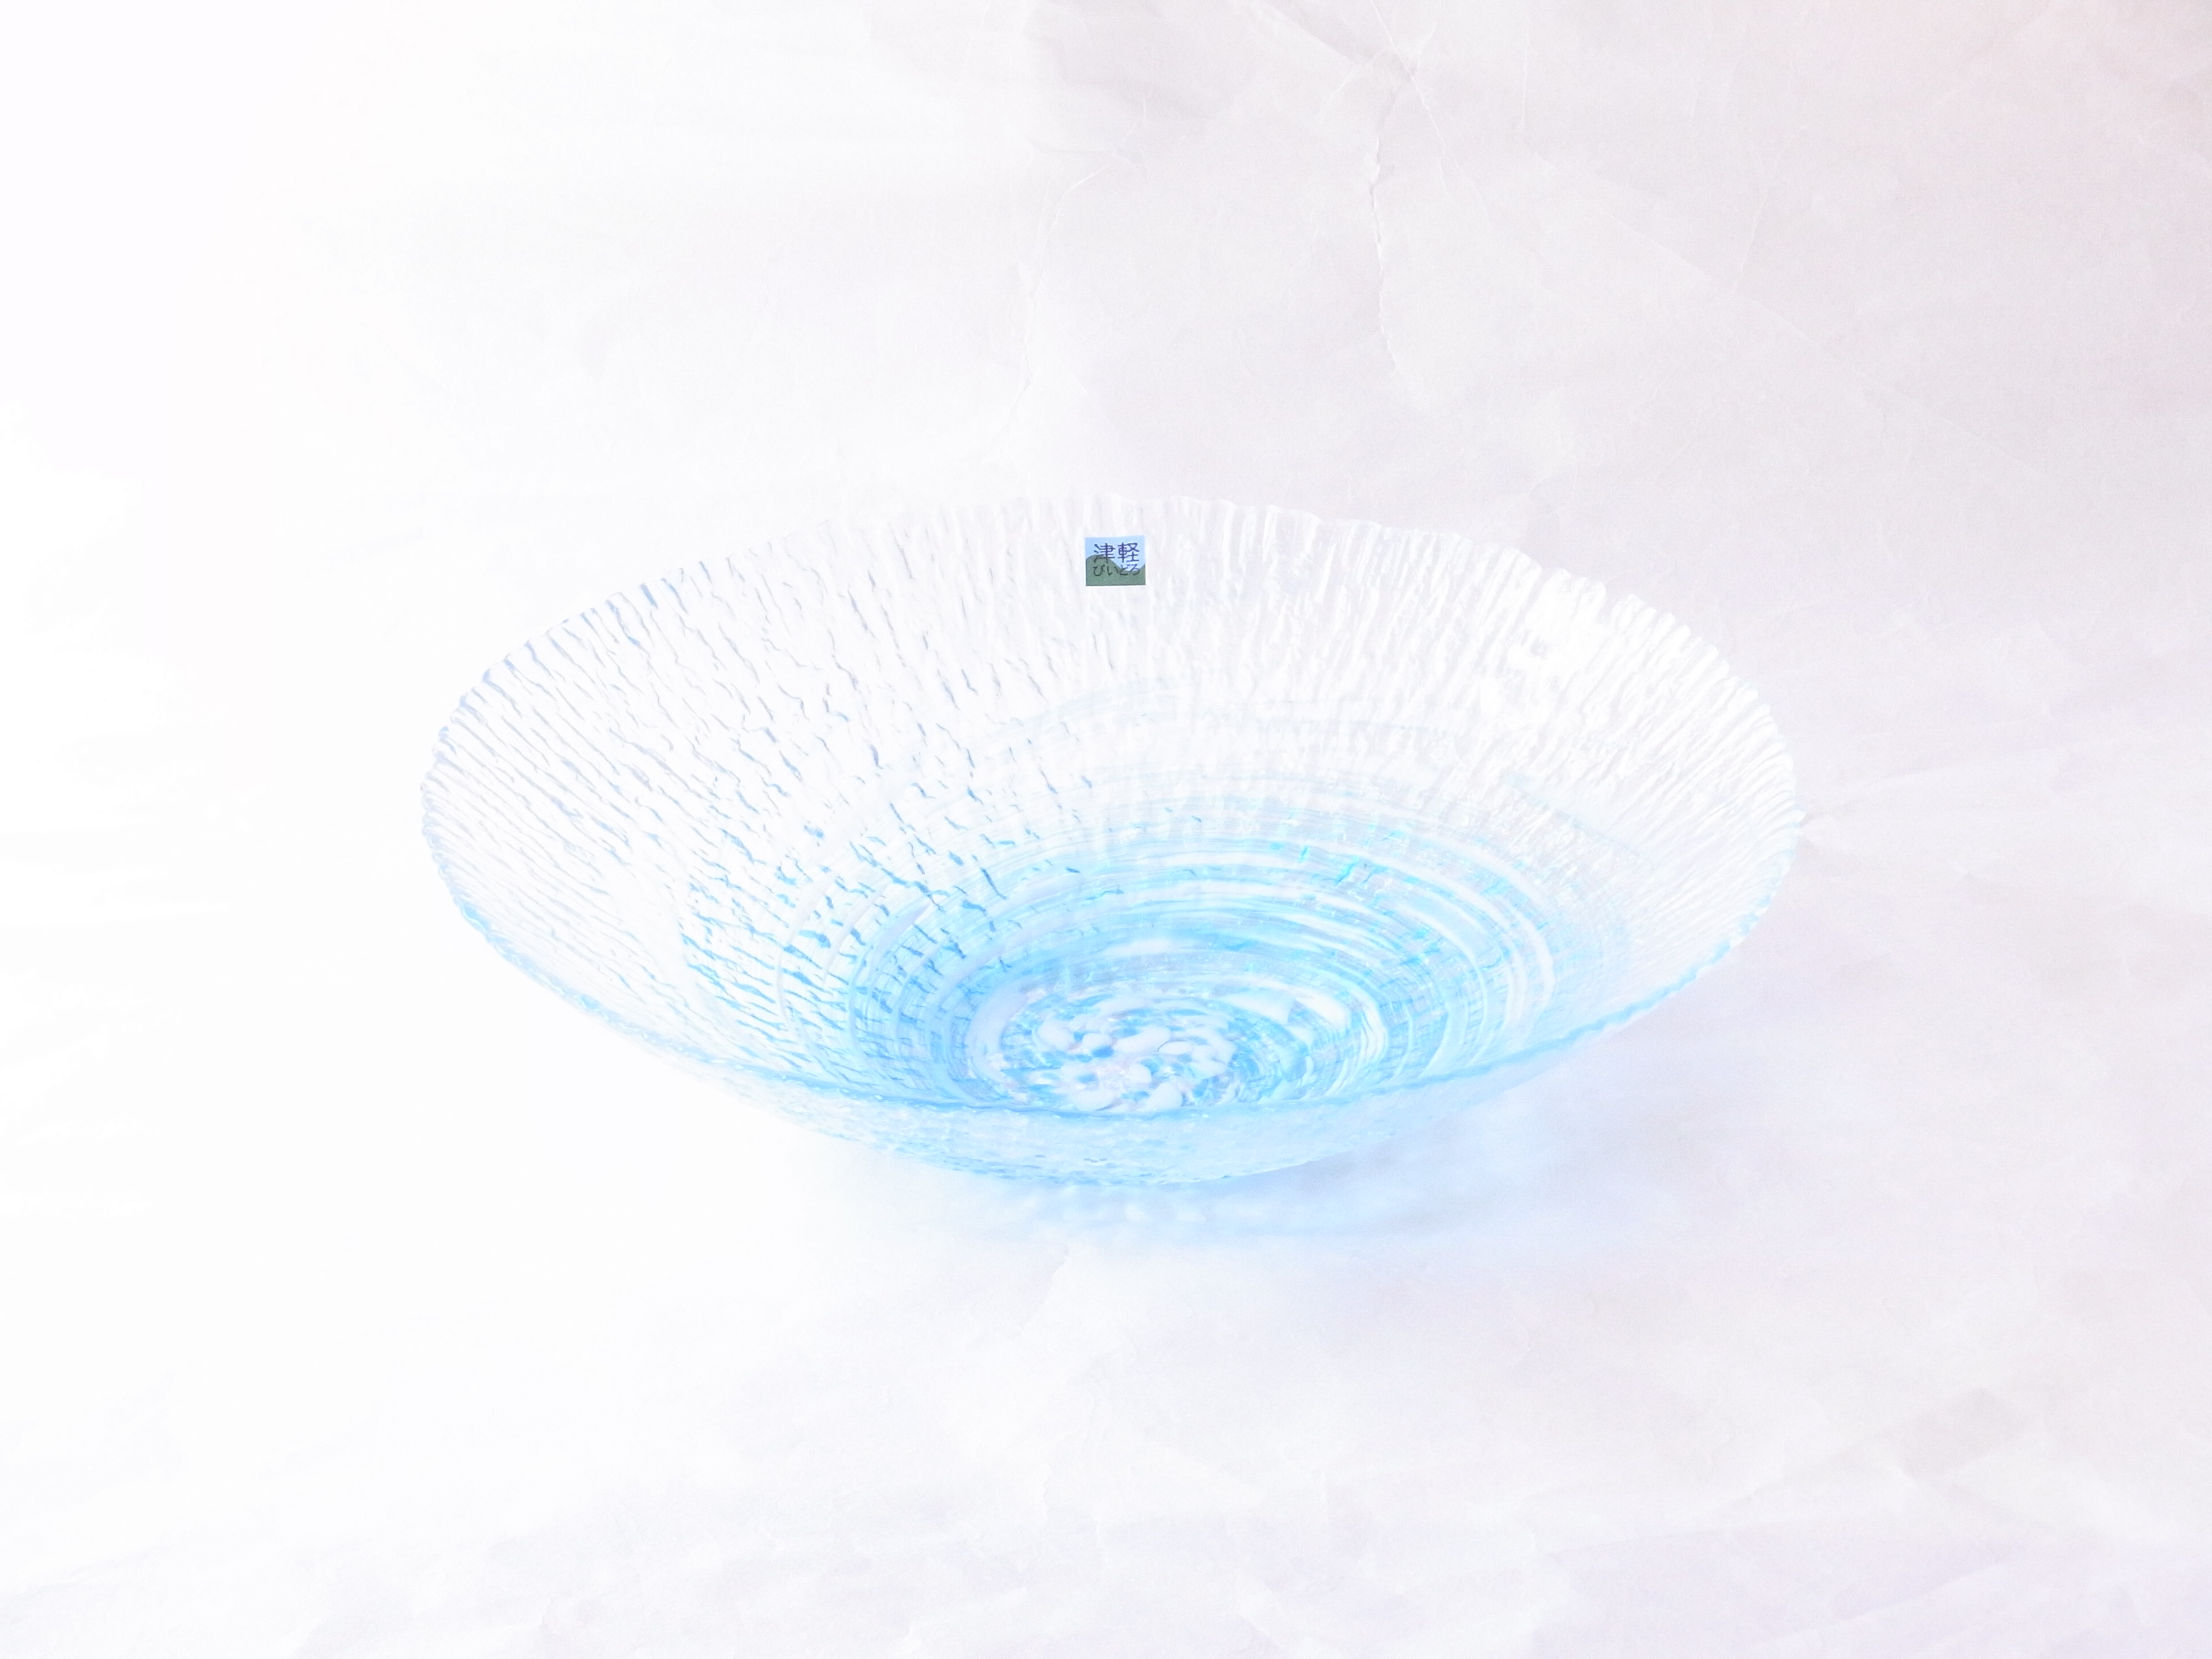 ガラス器　津軽びいどろ　水盤　花器　青森県の伝統工芸品　宙吹き　青森の自然をイメージ　ハンドメイド　美しい色ガラス　独自の調合　世界に類を見ない　多様な技術や技法　多彩な色使い　繊細な模様　美しい造形とデザイン　職人の手仕事から生まれる　花を生ける　水をはって浮き球を浮かべる　サラダやデザートを盛る　白やブルーの色が渦状になっている　水の流れのよう　涼を感じることができる　メイドインジャパンの工芸品　日本製　陶器　磁器　陶磁器　漆器　茶道具　華道具　贈り物　ギフト　記念品　引出物　法要　お返し　専門店　リアル店舗　高品質　安らぎ　いやし　よりおいしく　安心　機能的　長持ち　人気　おすすめ　高機能　ネット通販　ネットショップ　セレクトショップ　欲しい　購入　買う　買い物　岐阜県　岐阜市　美殿町　小林漆陶　特別な　選び抜かれた　品質重視　使いやすい　格安　老舗　誕生日　結婚　出産　入学　退職　母の日　父の日　敬老の日　クリスマス　プレゼント　叙勲　長寿　お祝い　御礼　内祝い　外国土産　海外みやげ　実店舗　創業１００年以上　使うと分かる　職人技 日本一の品揃え　日本一の在庫数　専門店　専門知識　数万点の在庫　百貨店（高島屋　三越　伊勢丹　松坂屋　大丸）にない　手作り　お洒落　高級品　希少価値　上質な器 伝統工芸品　コスパ　お値打ち　お買い得　堅牢　飽きない　永く使える　お気に入り　国産　料理が映える　満足感　豊かな食生活　豊かな食文化　こだわりの器　日本文化　他にない　ここにしかない　オリジナル　独自の　個性的　ここでしか買えない　超レアもの　一品もの　現品限り　入手困難　いい器　匠の技　美しい　実用的　外人が喜ぶ店　外人が珍しがる店　外人がうれしい店　日本各地の一級品を売る店　日本全国の器を売る店　本当にいいもの コスパ高い　一流品　修理　選りすぐりの逸品　周年記念　日本土産　岐阜土産　料理を引き立てる器　高級店　一流店　岐阜で一番　東海で一番　中部で一番　日本で一番　おしゃれな店　地域一番店　実店舗　陶磁器　磁器　華道具　ガラス器　明治４２年創業　有田焼　清水焼　美濃焼　赤津焼　万古焼　常滑焼　九谷焼　唐津焼　萩焼　信楽焼　万古焼　砥部焼　備前焼　丹波焼　山中塗　春慶塗　讃岐塗　越前塗　輪島塗　紀州塗　会津塗　小田原木工　桜皮細工　秋田杉　駿河竹細工　七宝焼　南部鉄器　錫製品　江戸切子　津軽びいどろ　　　　　　